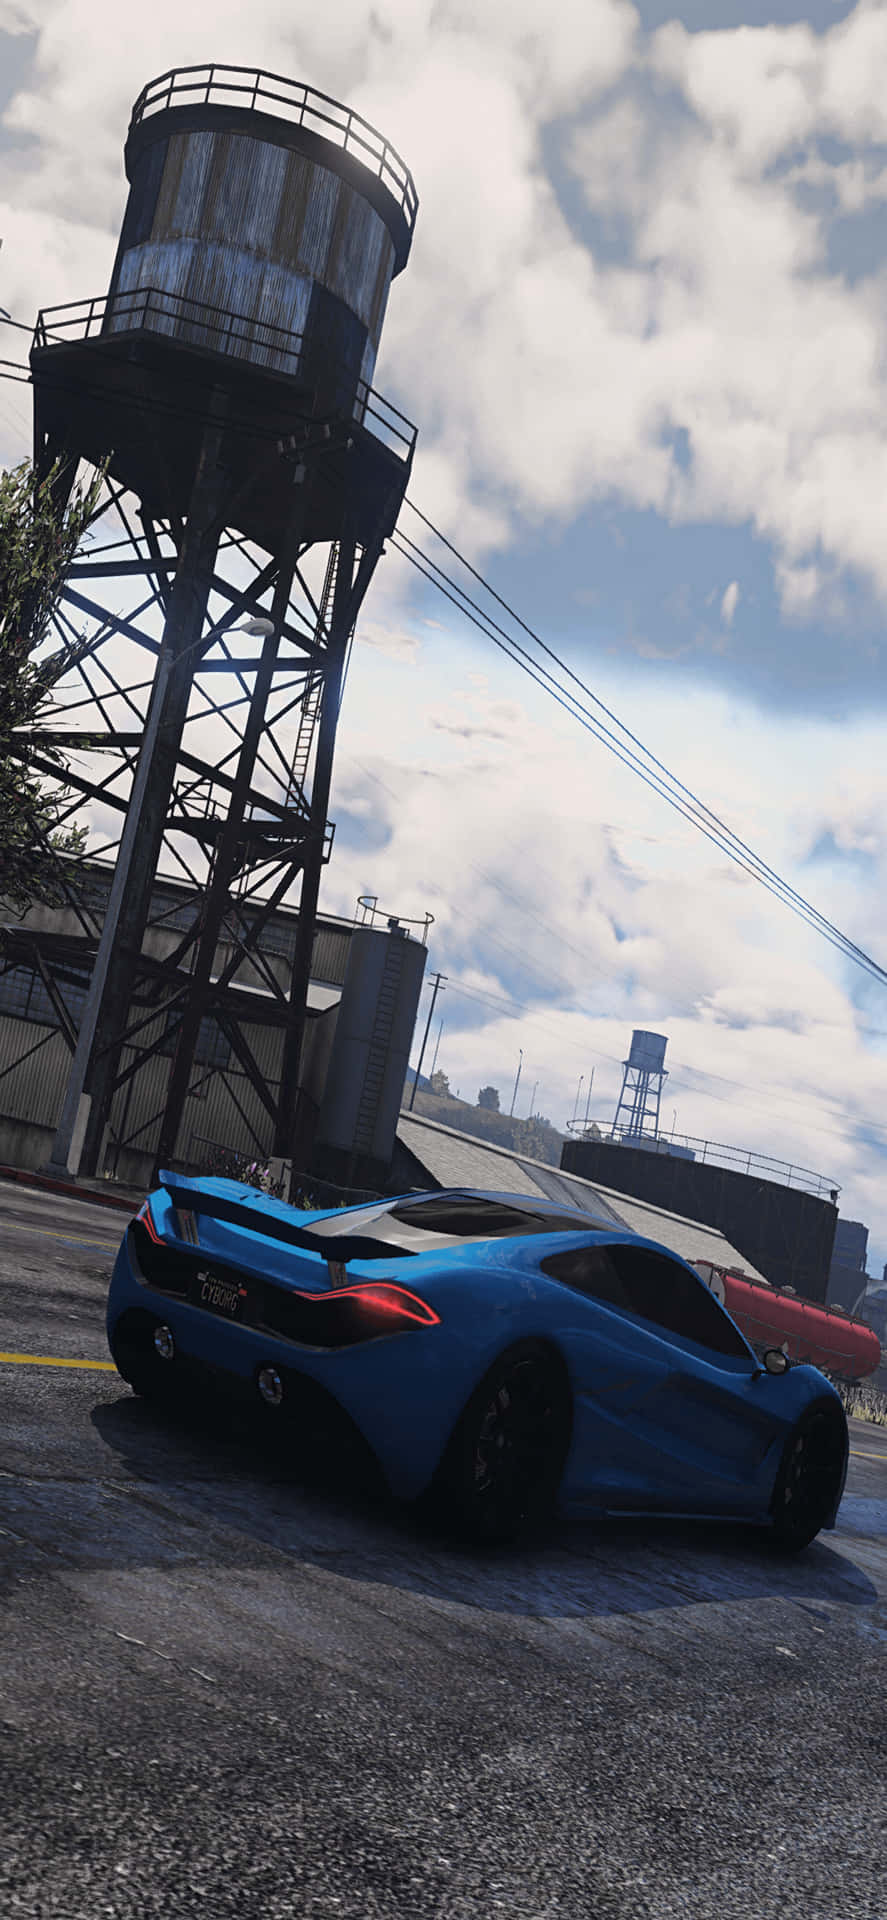 Fondode Pantalla Para Iphone Xs Max De Grand Theft Auto V Con Un Auto Deportivo Azul.